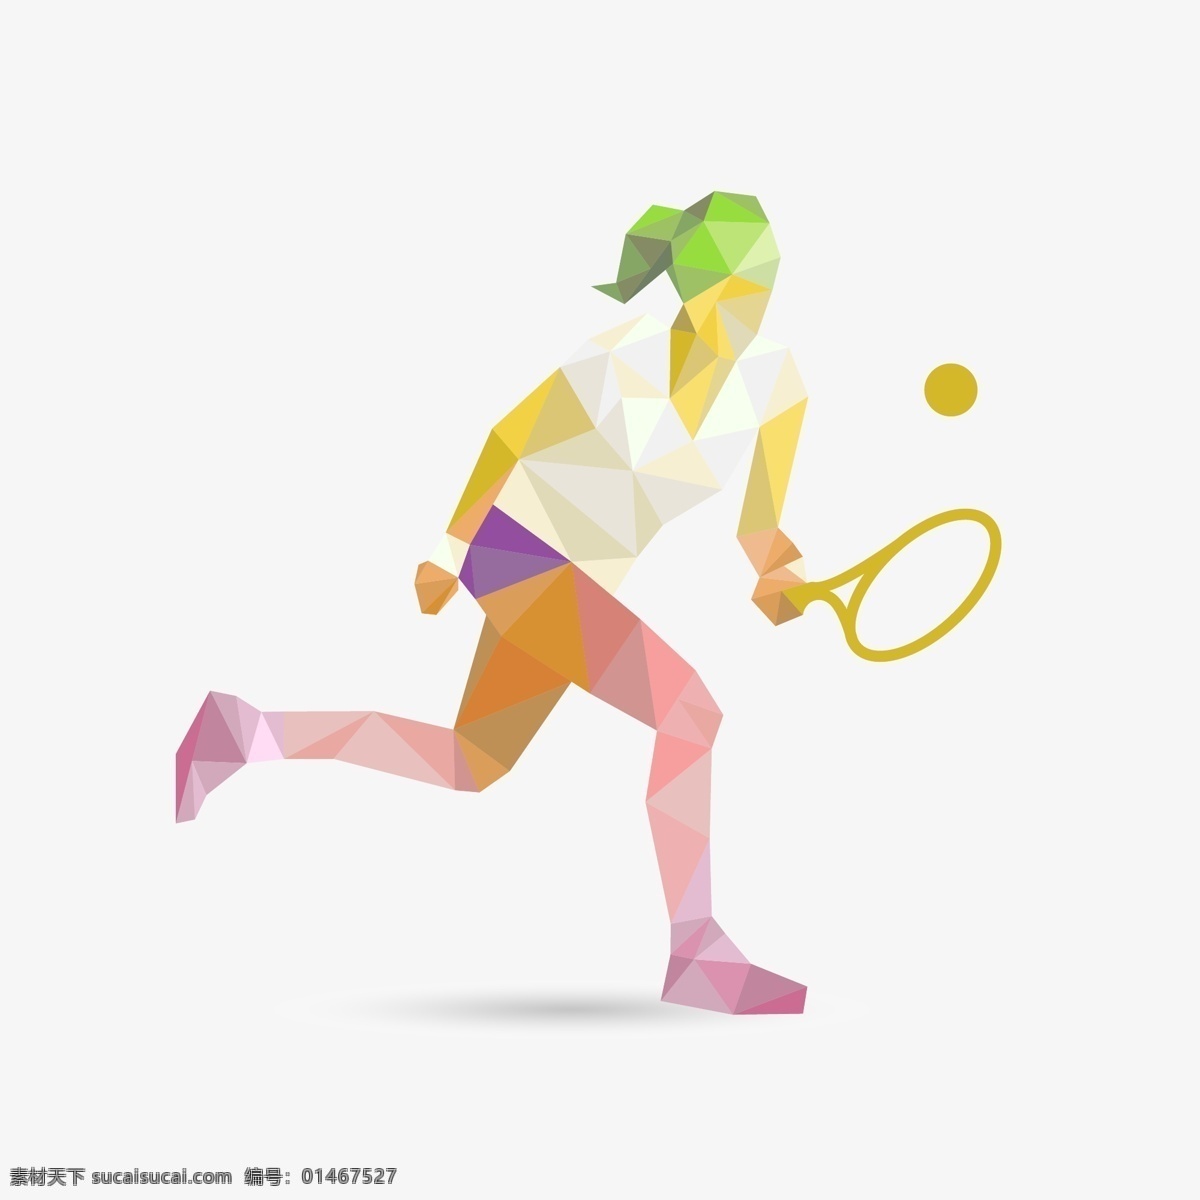 网球运动 运动 体育运动 奥运会 比赛 运动海报 运动比赛海报 运动员 户外运动 室内运动 运动俱乐部 卡通设计